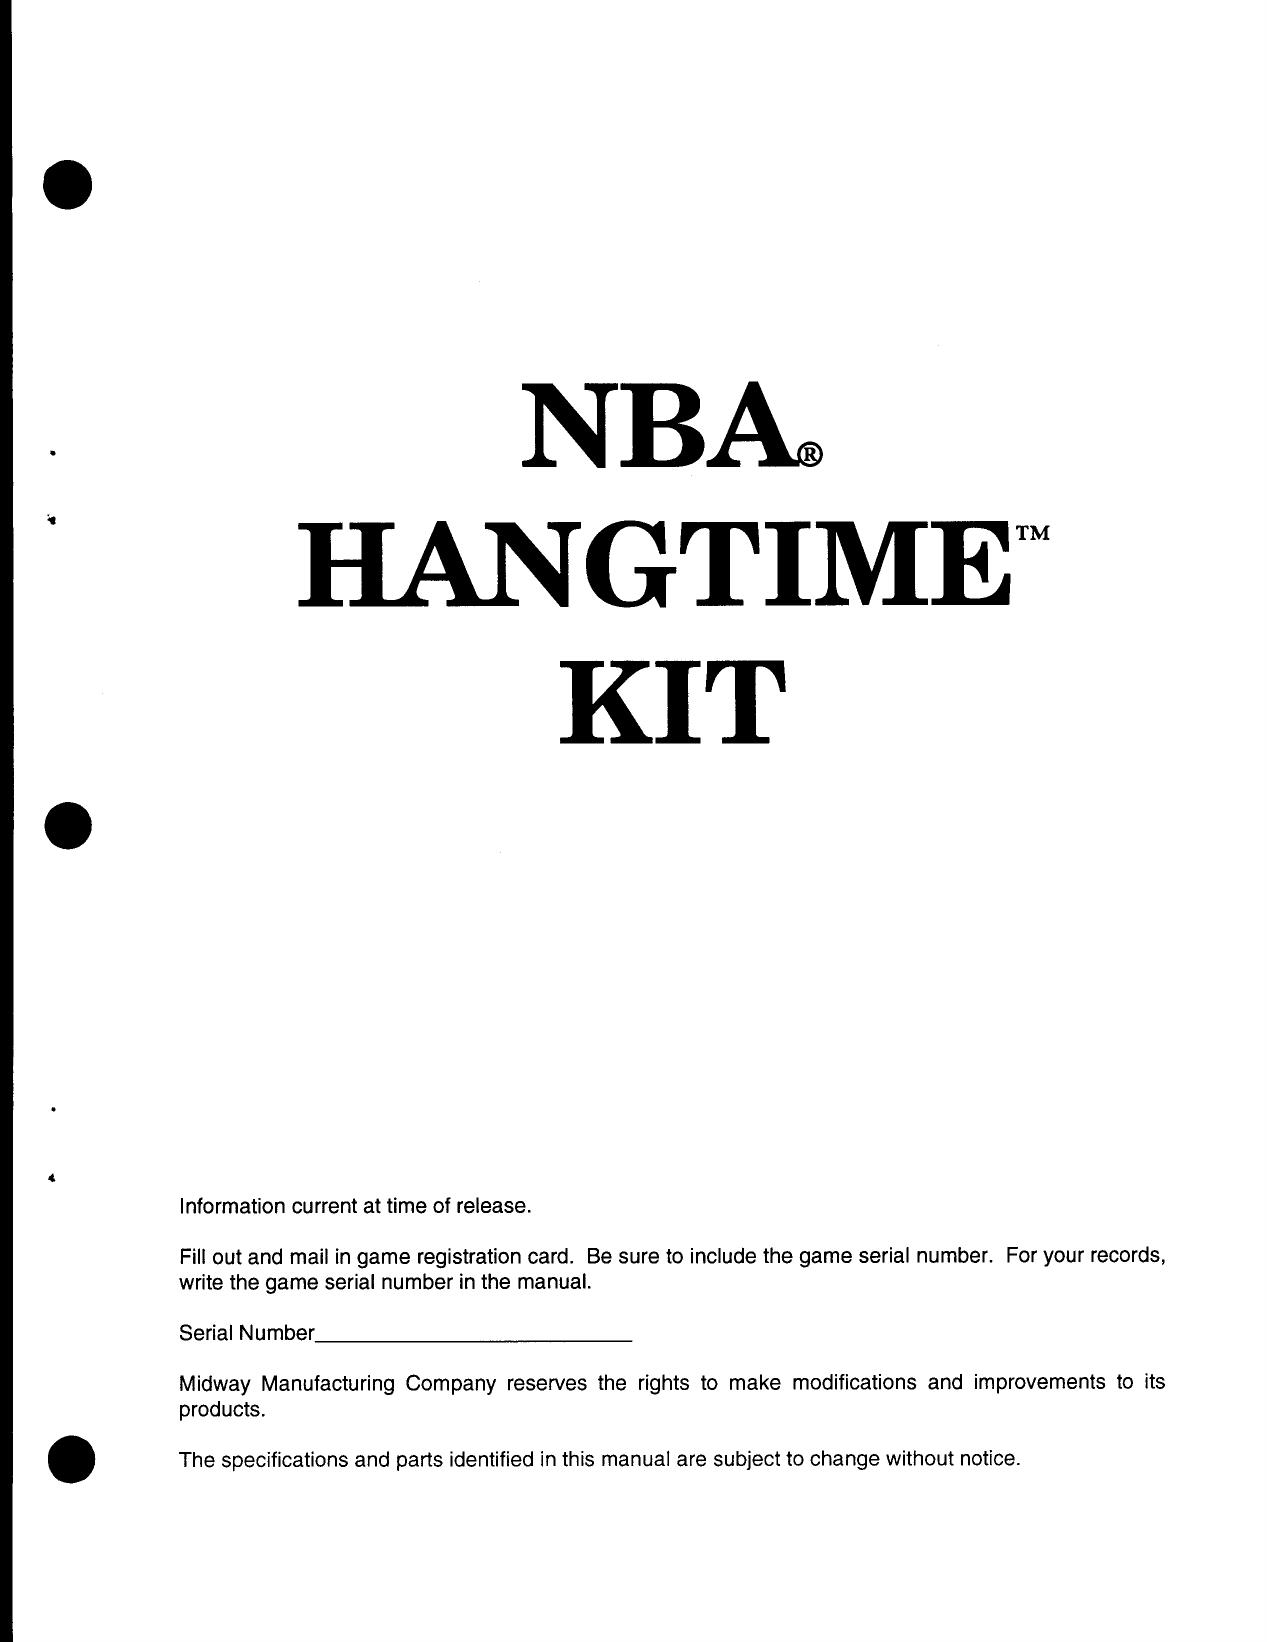 NBA Hangtime (Kit) (U)